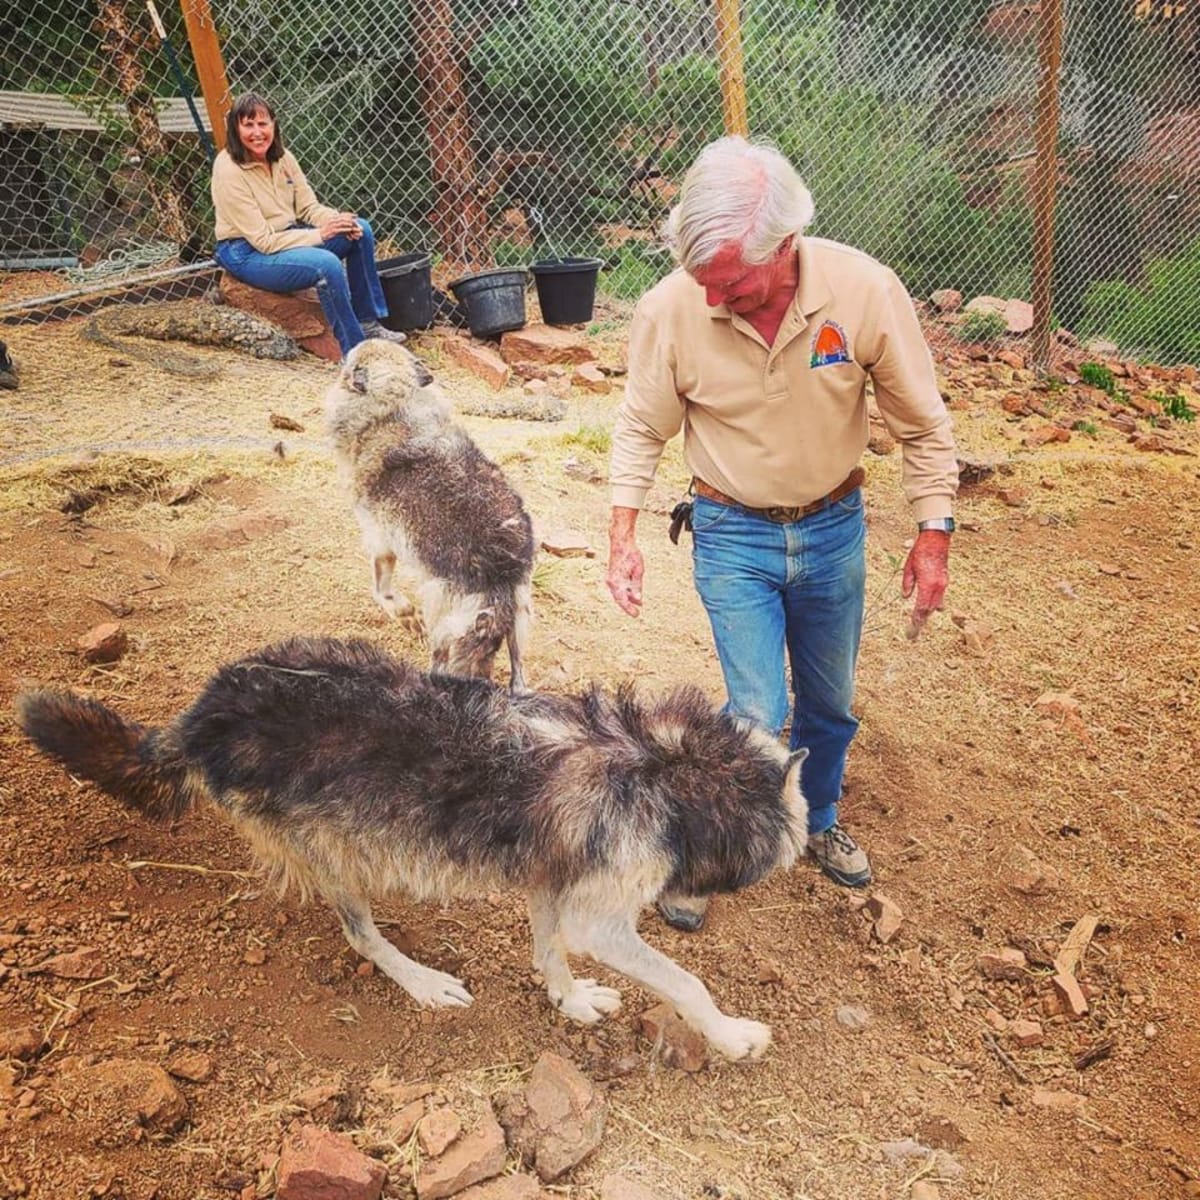 Návštěvu původních ošetřovatelů z W.O.L.F. vlci vždy nadšeně vítají. Zdroj: FB Mattersville